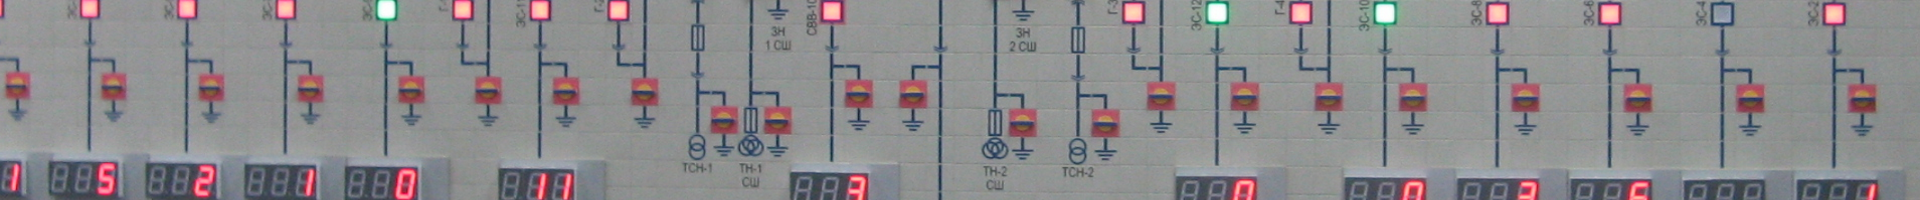 Заголовочное изображение страницы мозаичных диспетчерских щитов ЩДМ-25